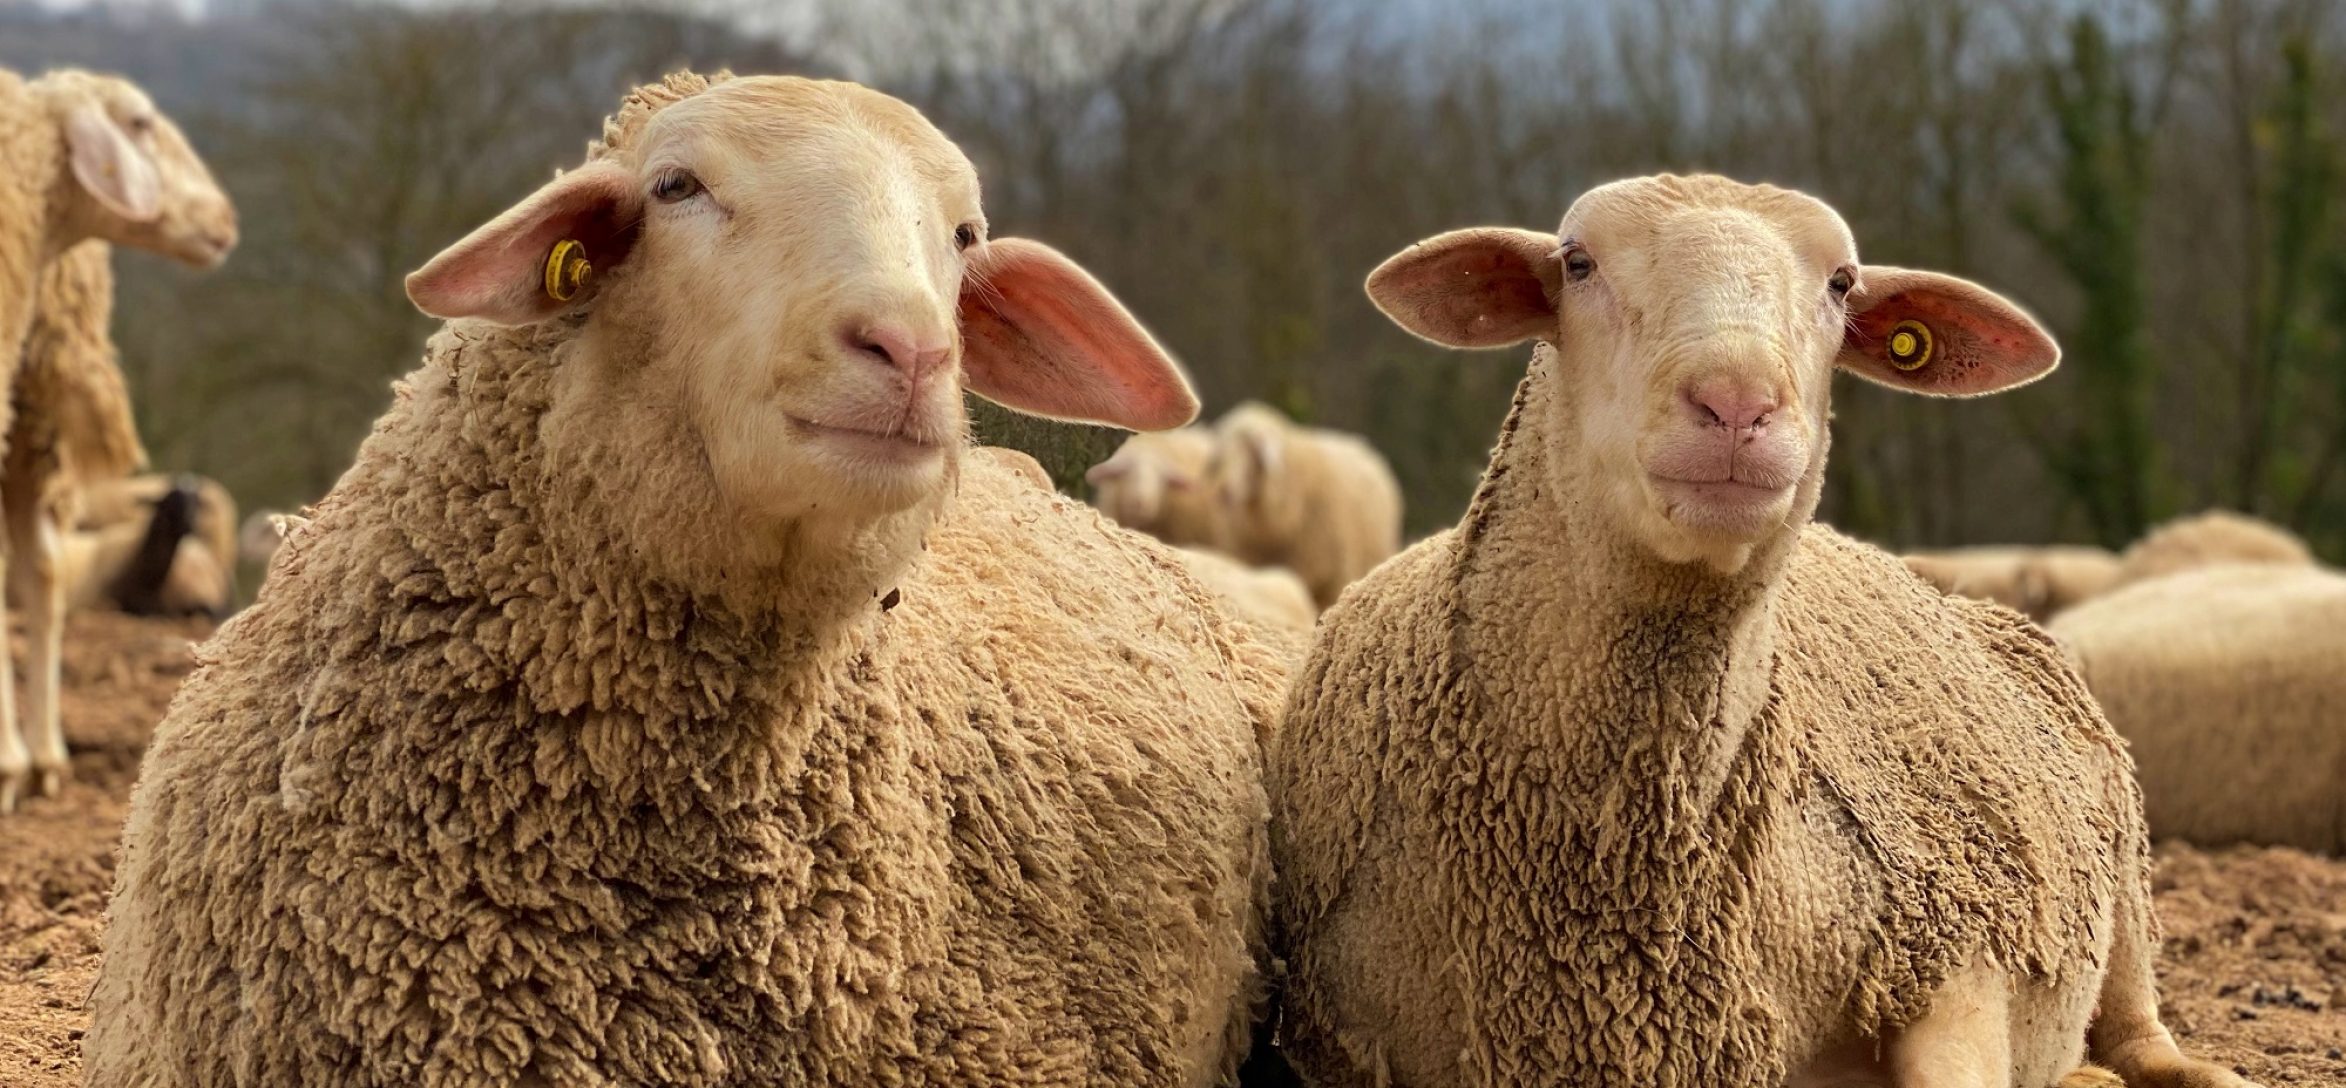 Neus-e-Iona-dos-ovejas-rescatadas-por-el-refugio-de-animales-Santuario-Gaia-situado-en-Camprodon